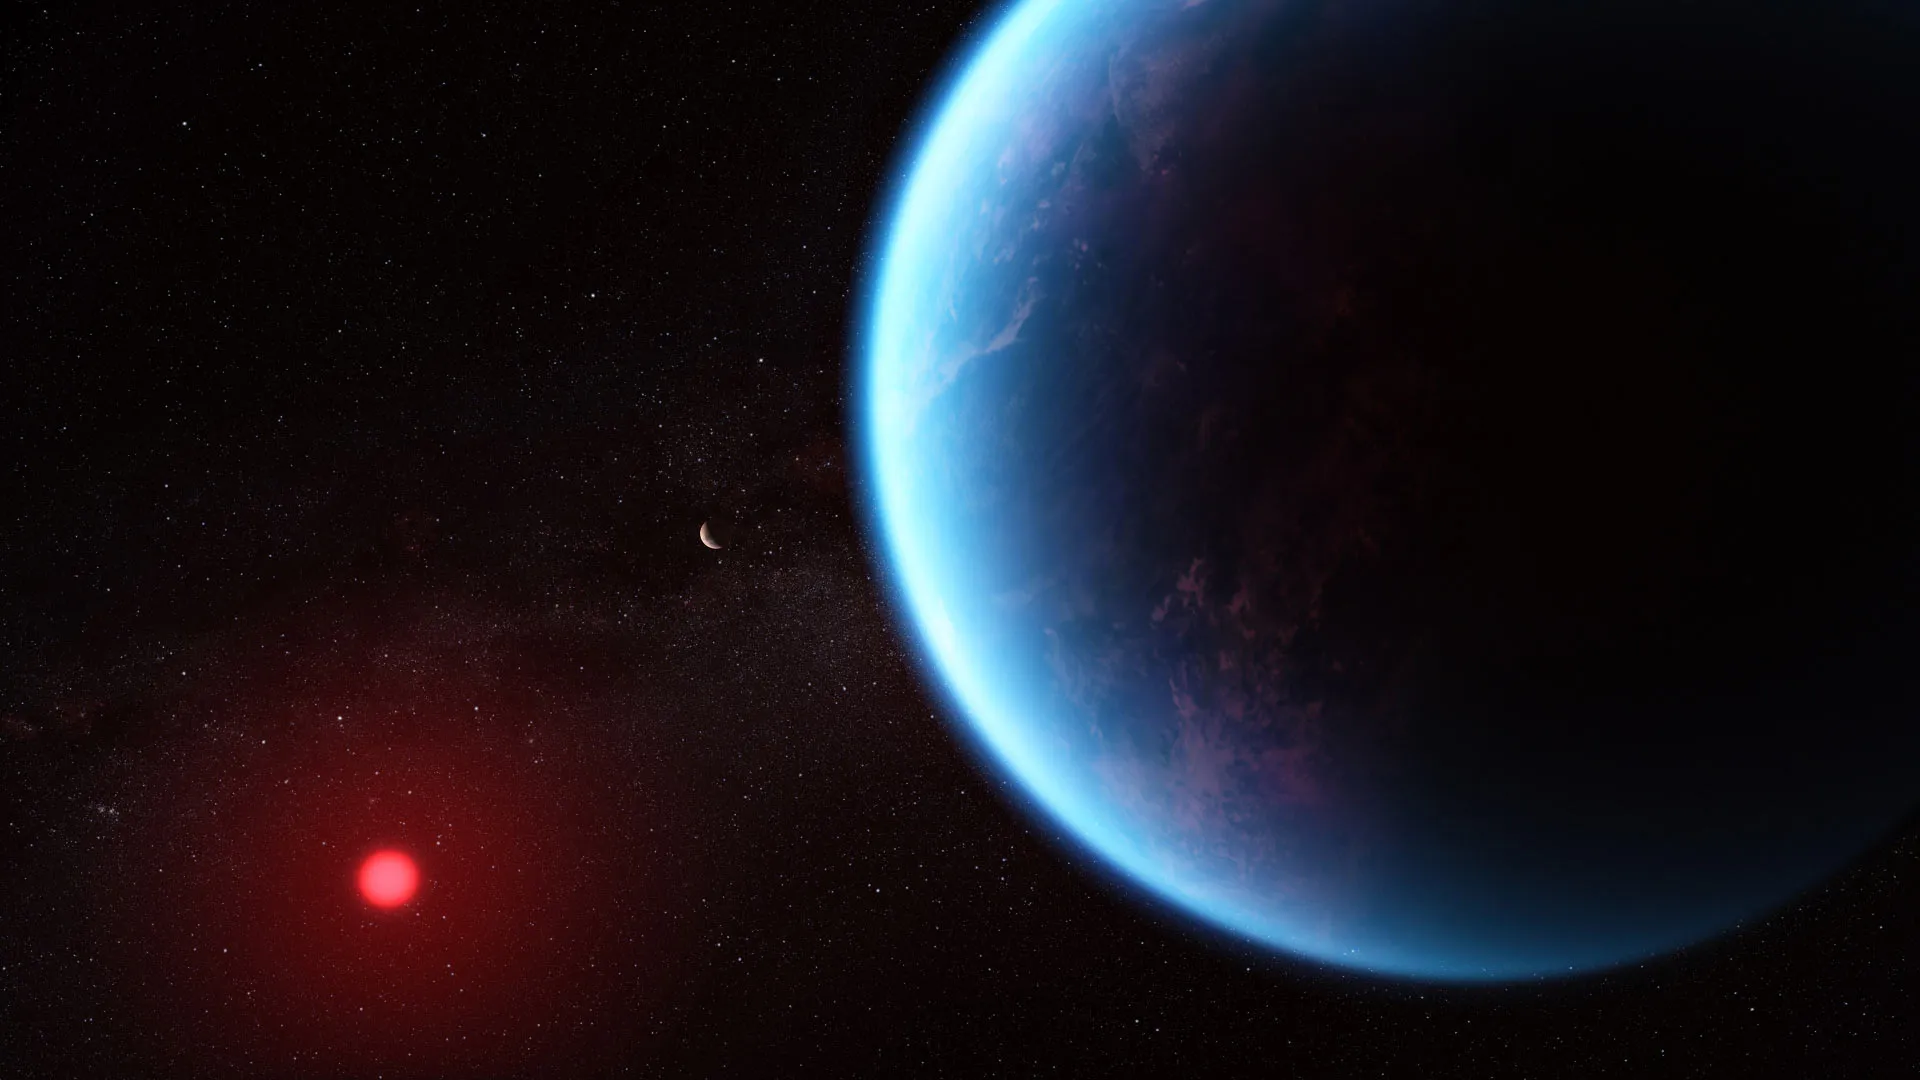 艺术家对K2-18行星系统的想像。An artist’s impression of the K2-18 planetary system. Image credit: NASA / ESA / CSA / J. Olmsted, STScI / N. Madhusudhan, University of Cambridge.